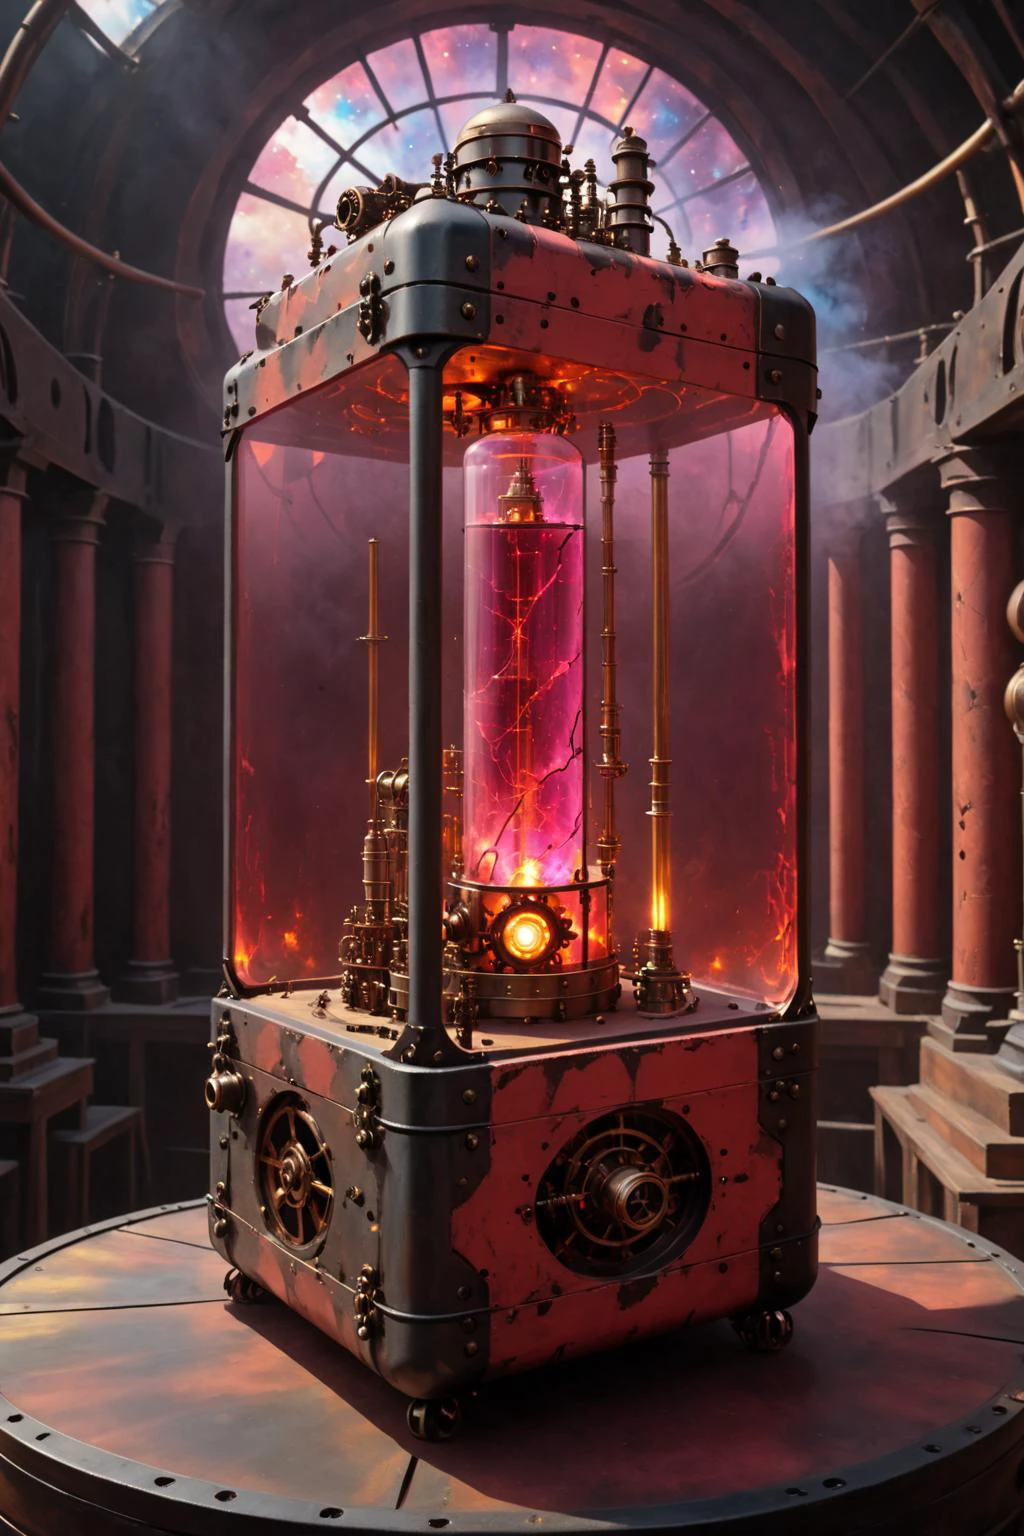 包含颜色, 魔法炮兵 Beta 位于大型矩形蒸汽朋克容器内， (红色玻璃), 绘画世界, 达豪斯世界风格